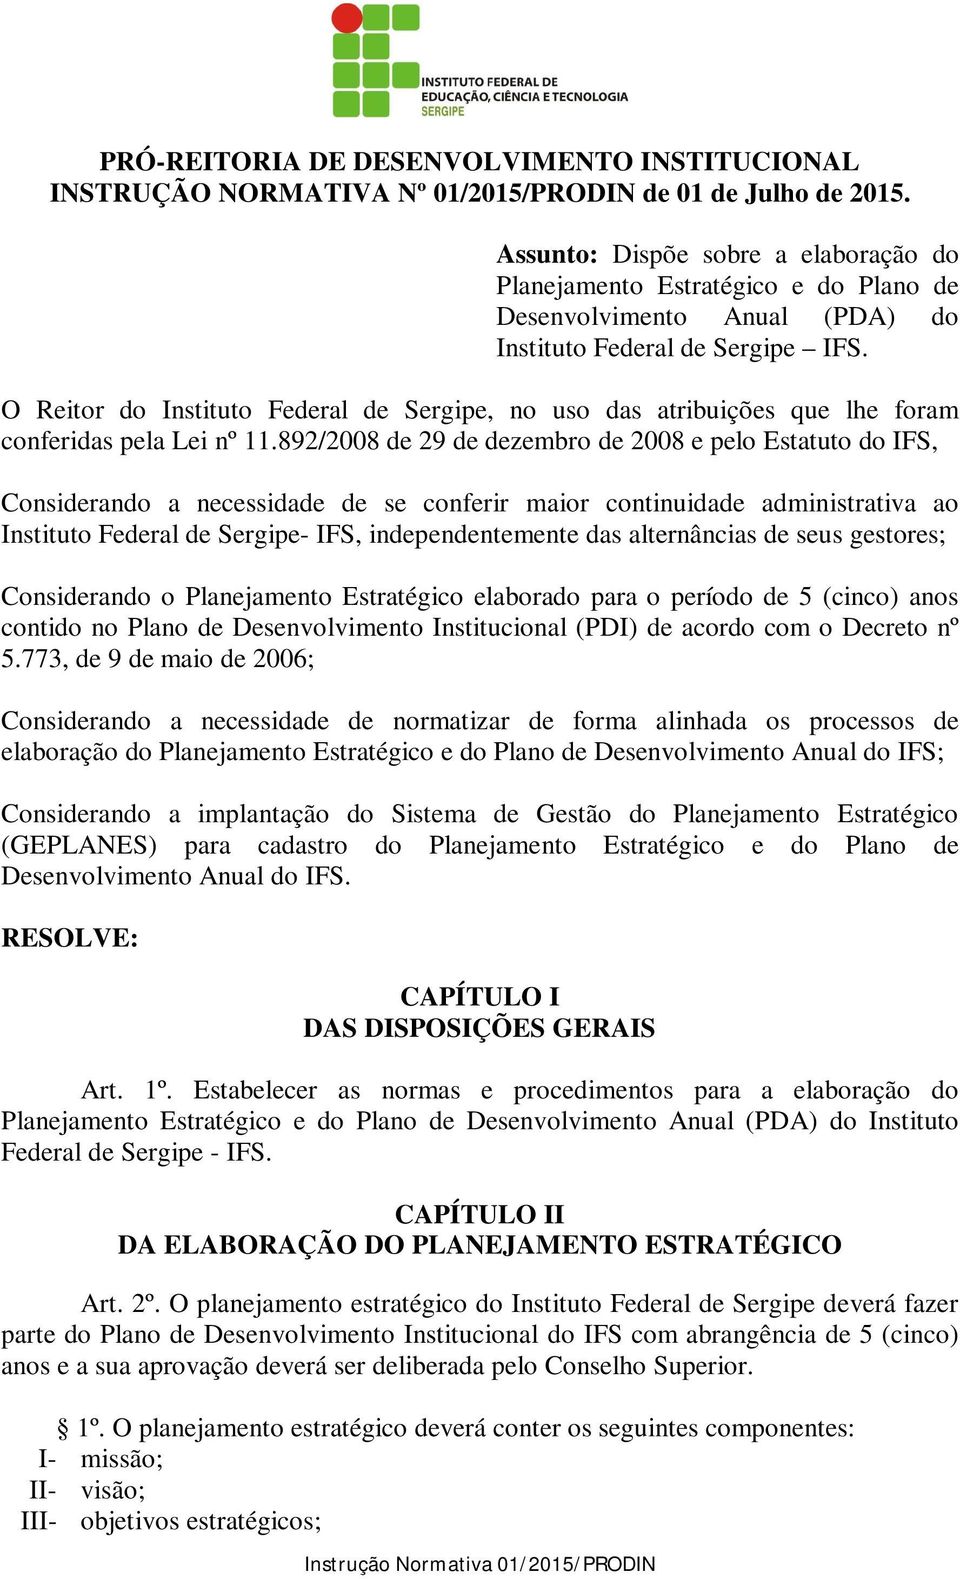 O Reitor do Instituto Federal de Sergipe, no uso das atribuições que lhe foram conferidas pela Lei nº 11.